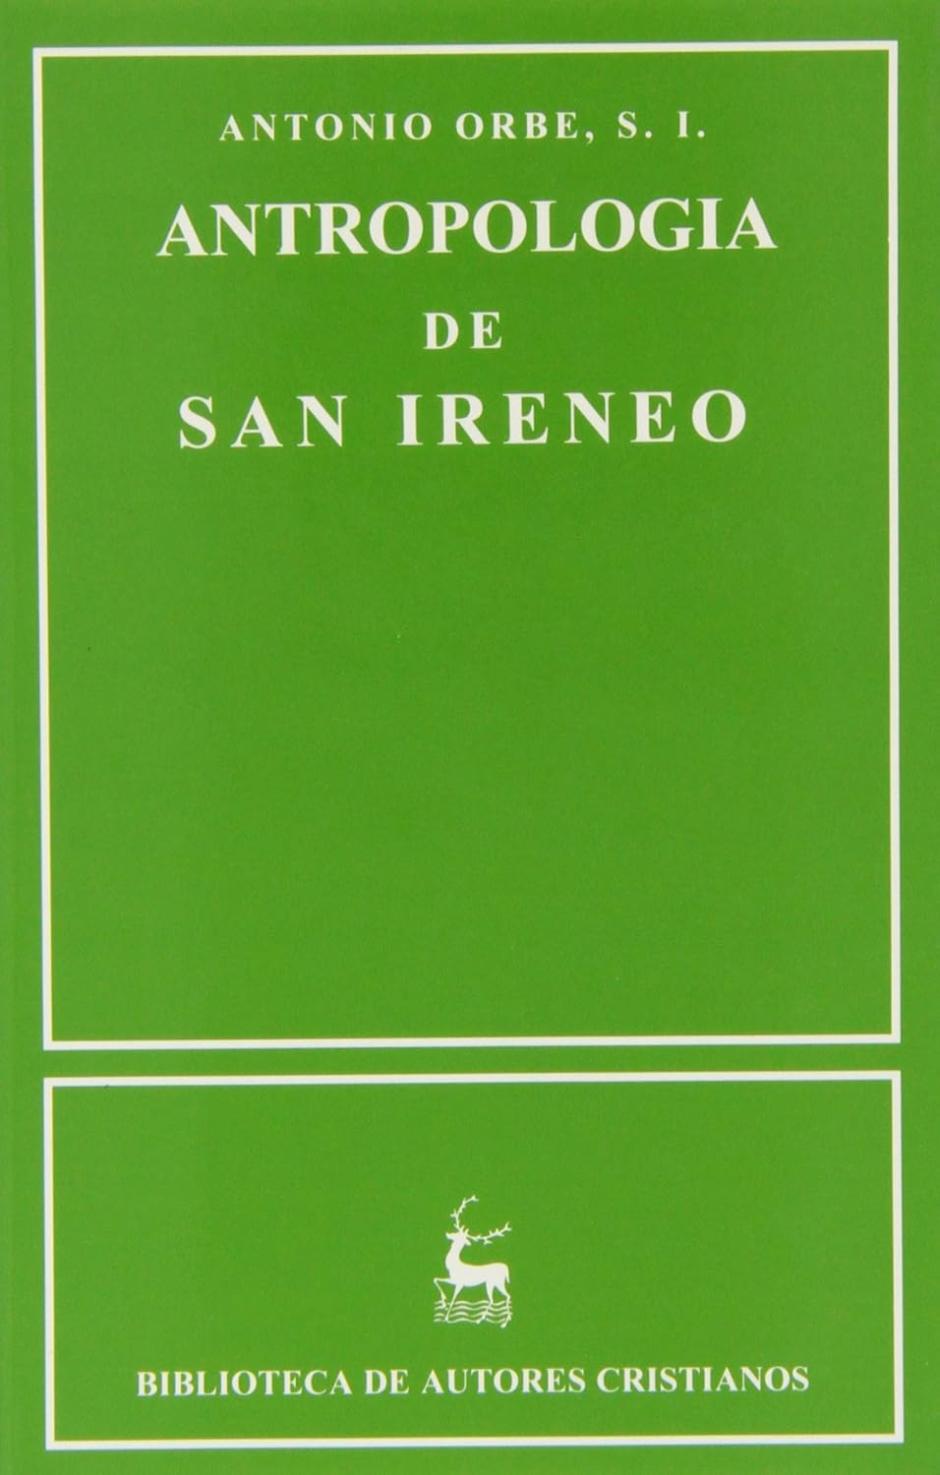 Antropología de san Ireneo (editada por Antonio Orbe)